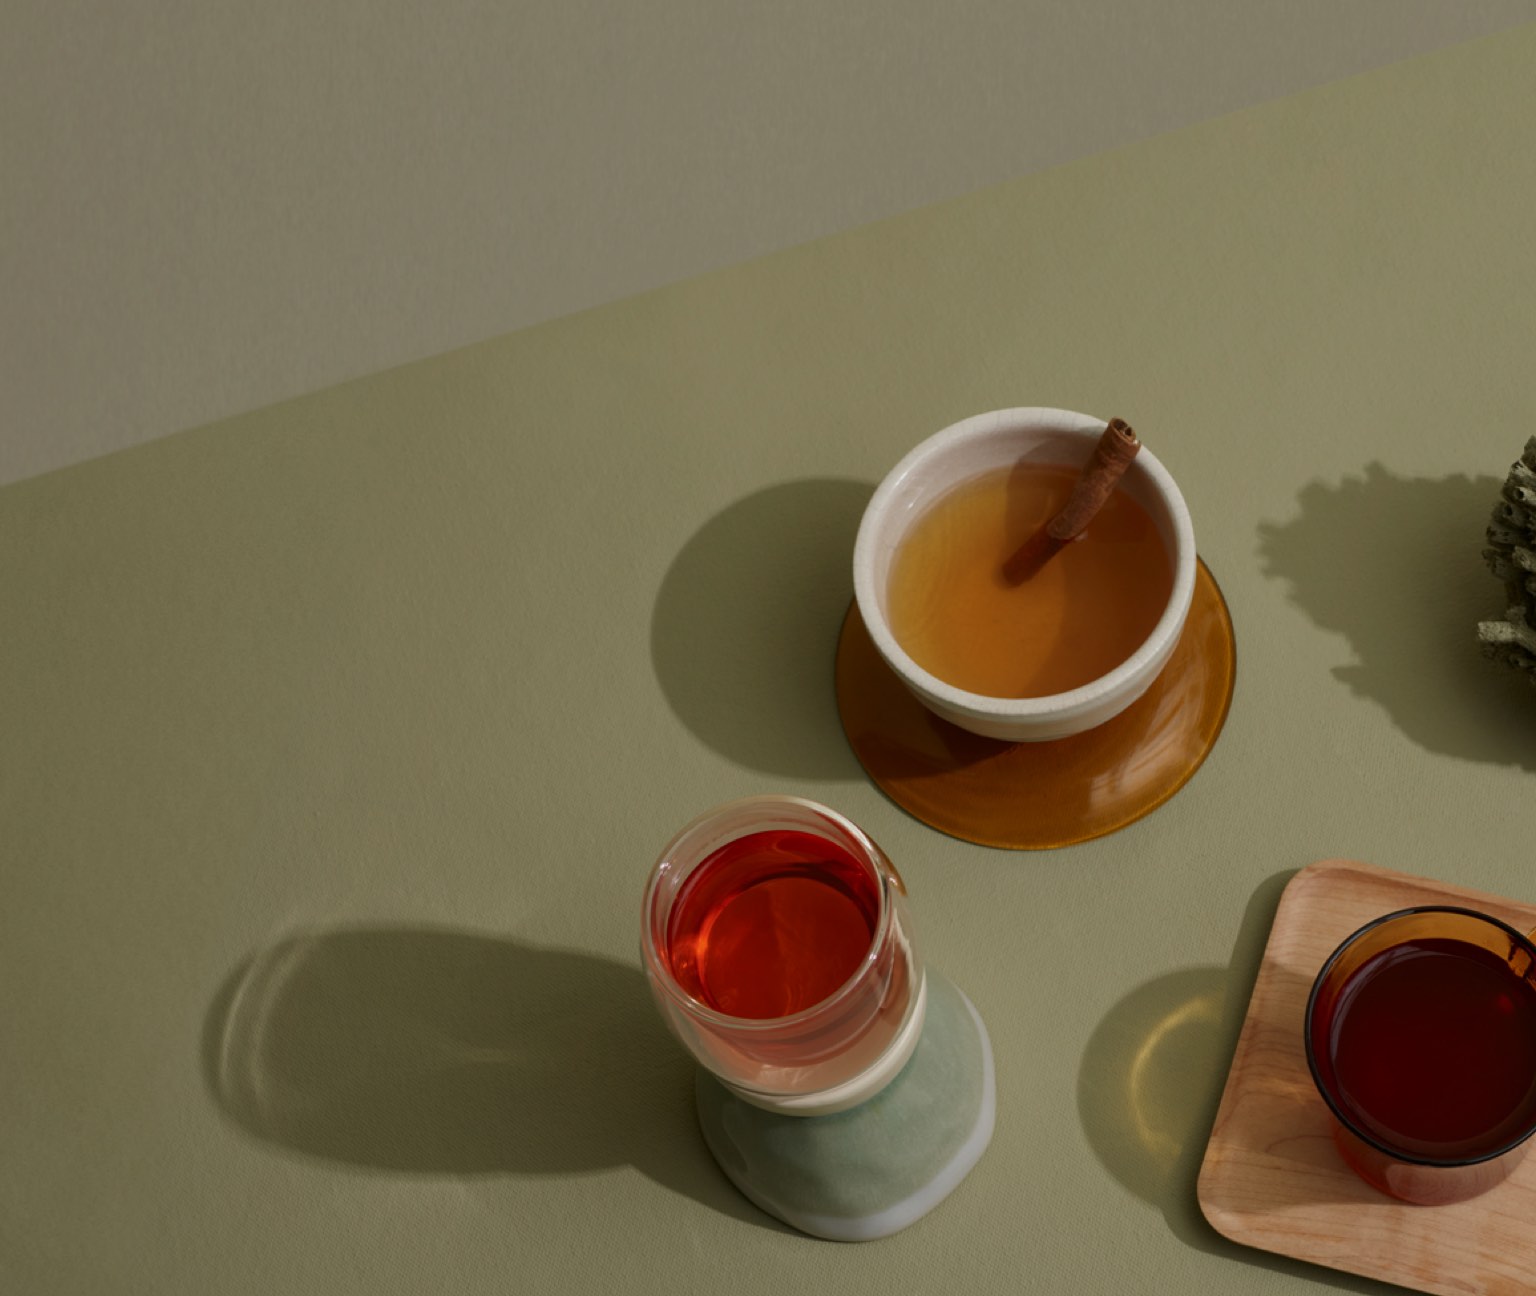 Assortiment de tasses en verre et en céramique remplies de thé chaï à base d’ingrédients tels que gingembre, anis et cardamome.